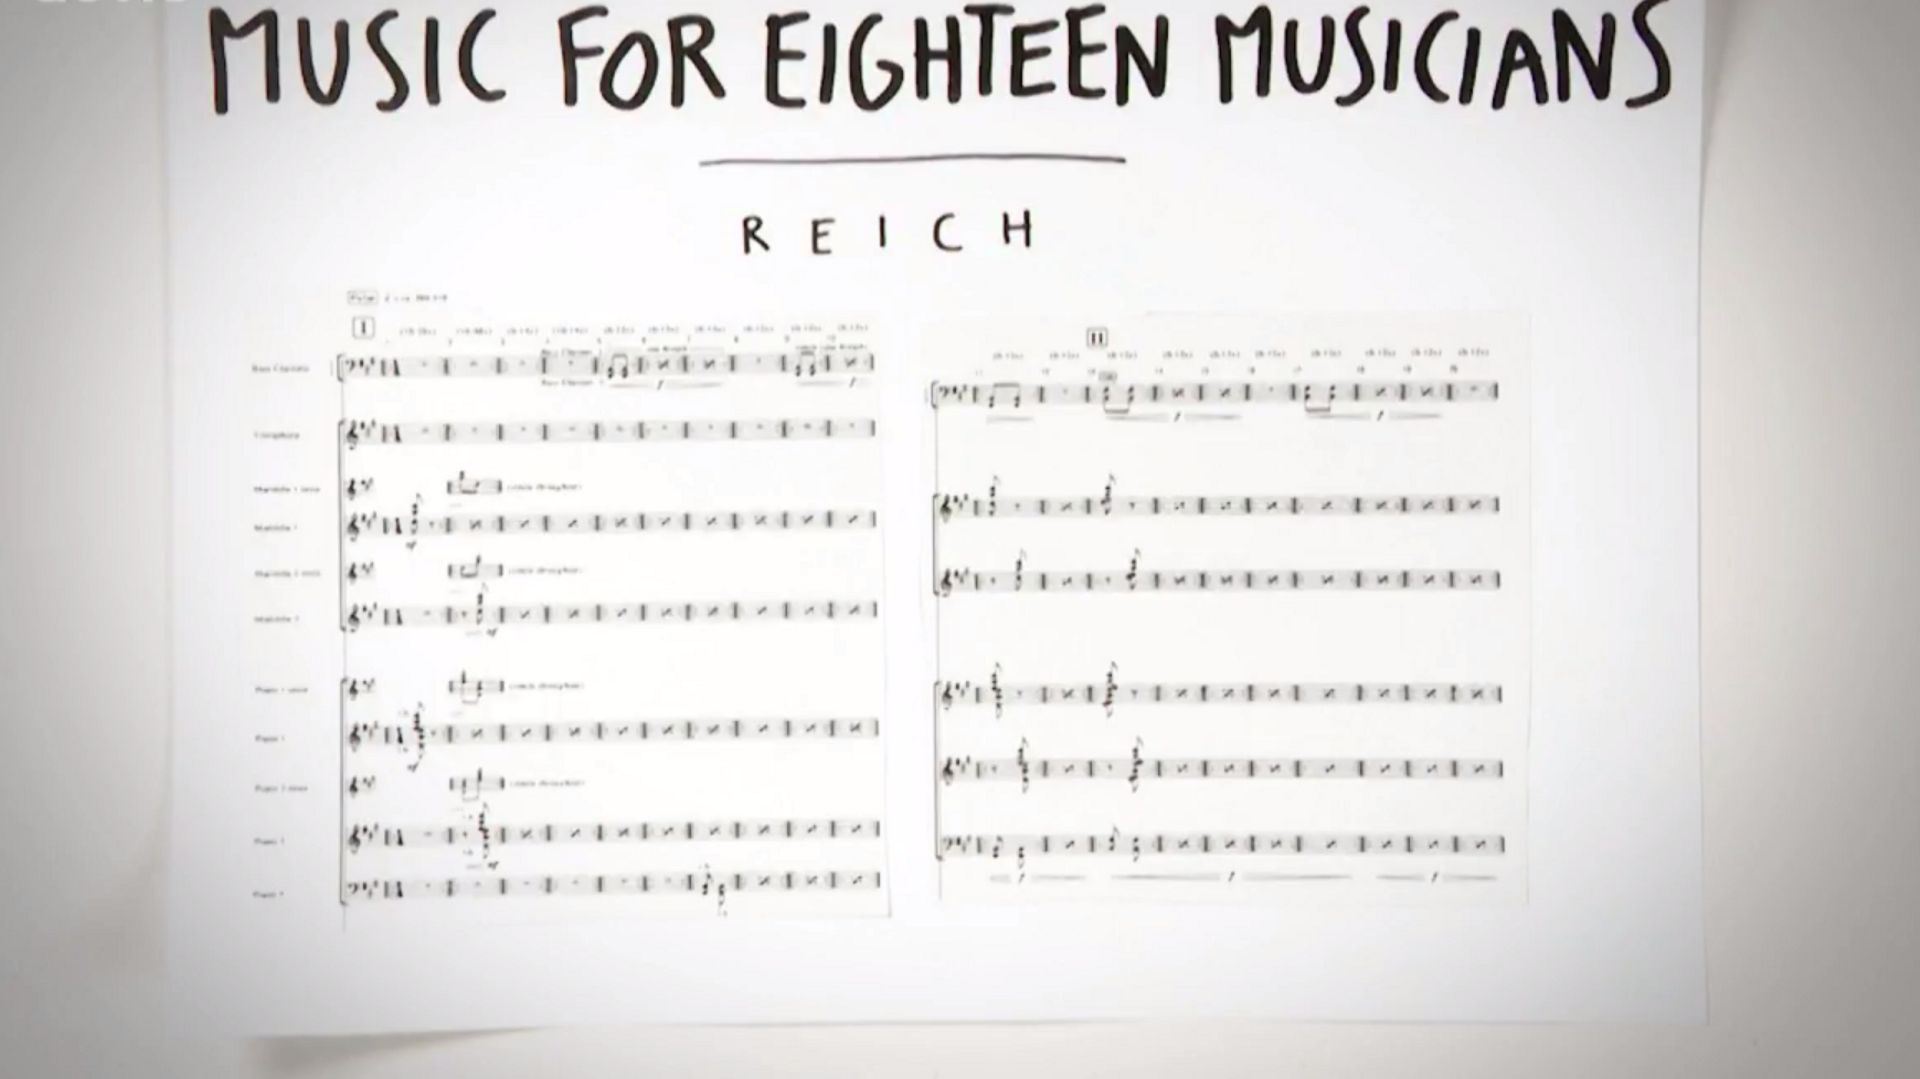 Je Sais Pas Vous de Patrick Leterme : REICH - Music for eighteen musicians